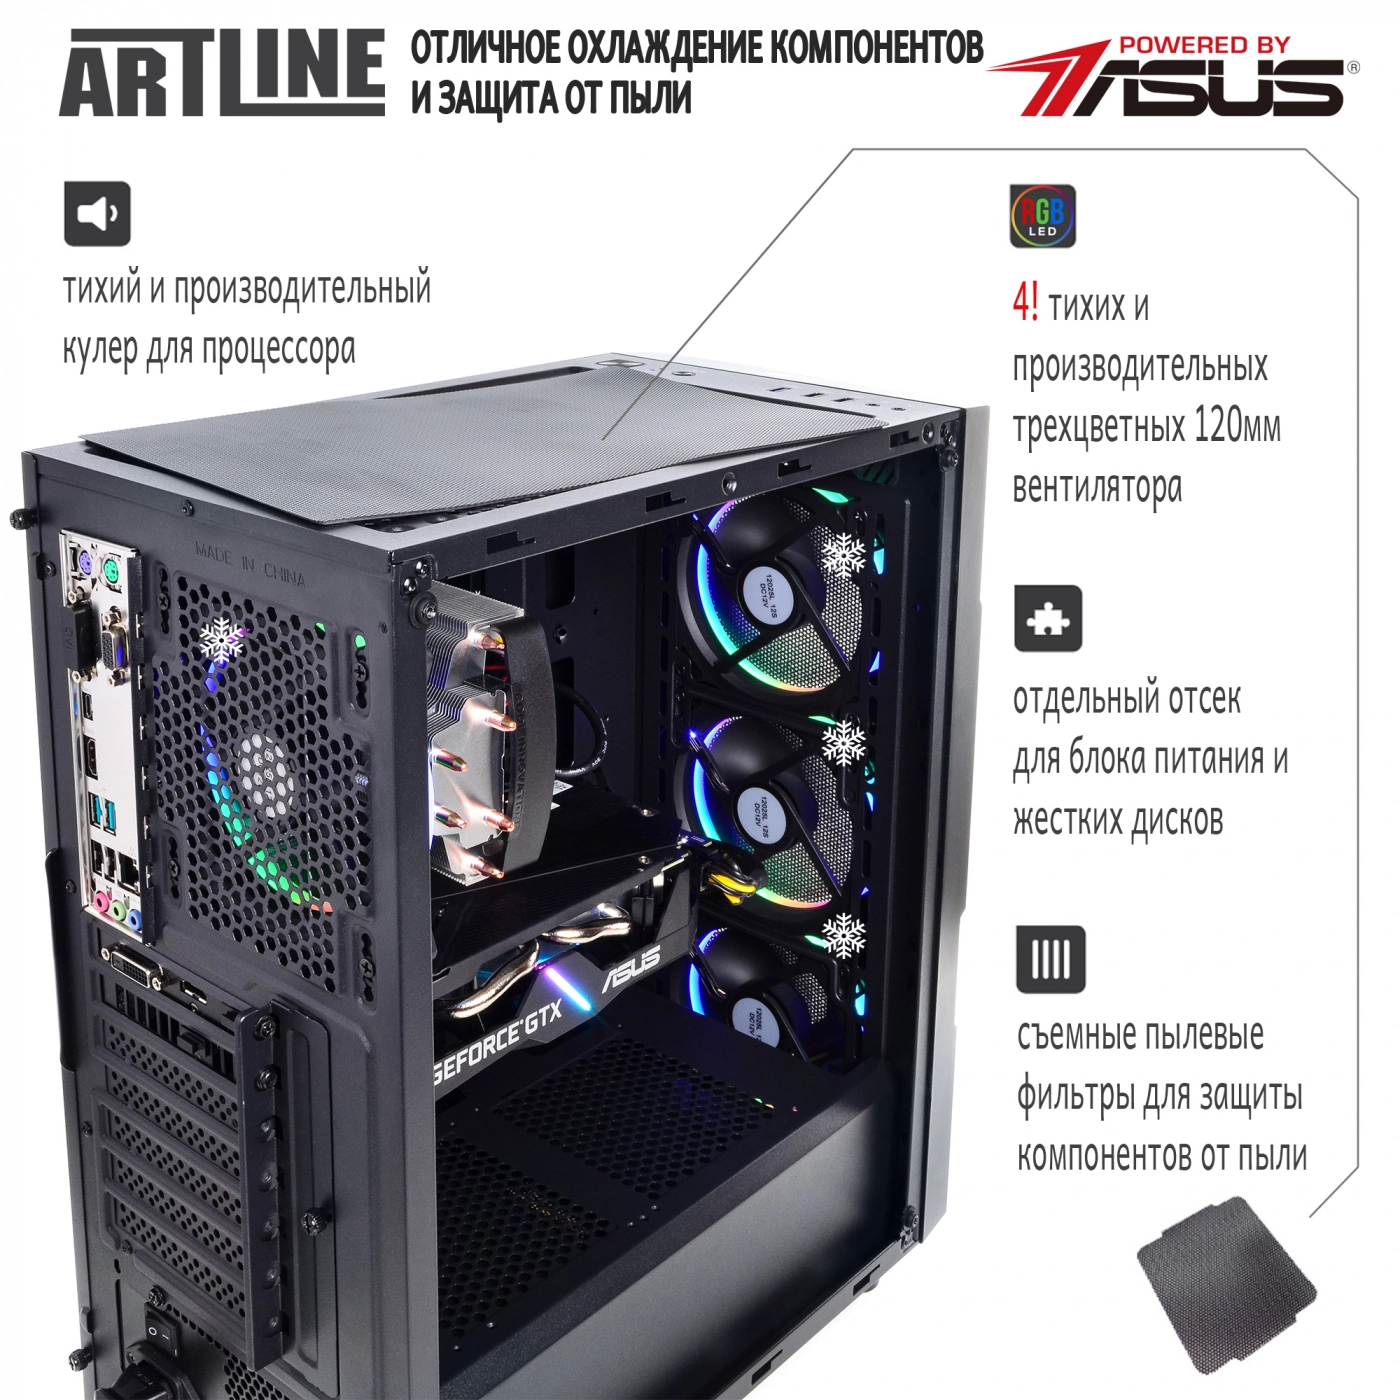 Купить Компьютер ARTLINE Gaming X45v27 - фото 2